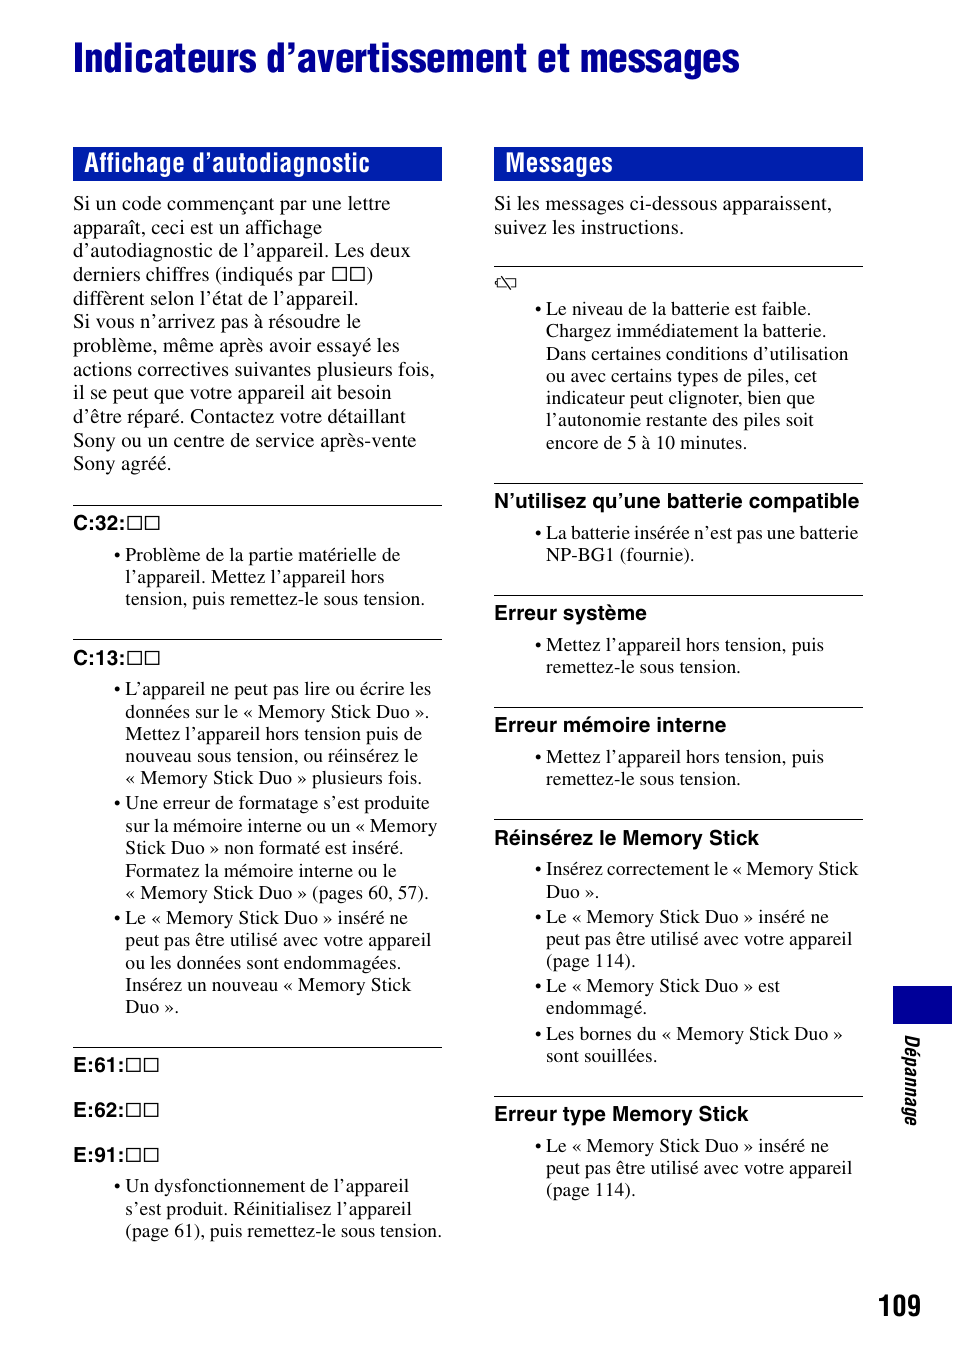 Indicateurs d’avertissement et messages, Affichage d’autodiagnostic messages | Sony DSC-T20 Manuel d'utilisation | Page 109 / 122